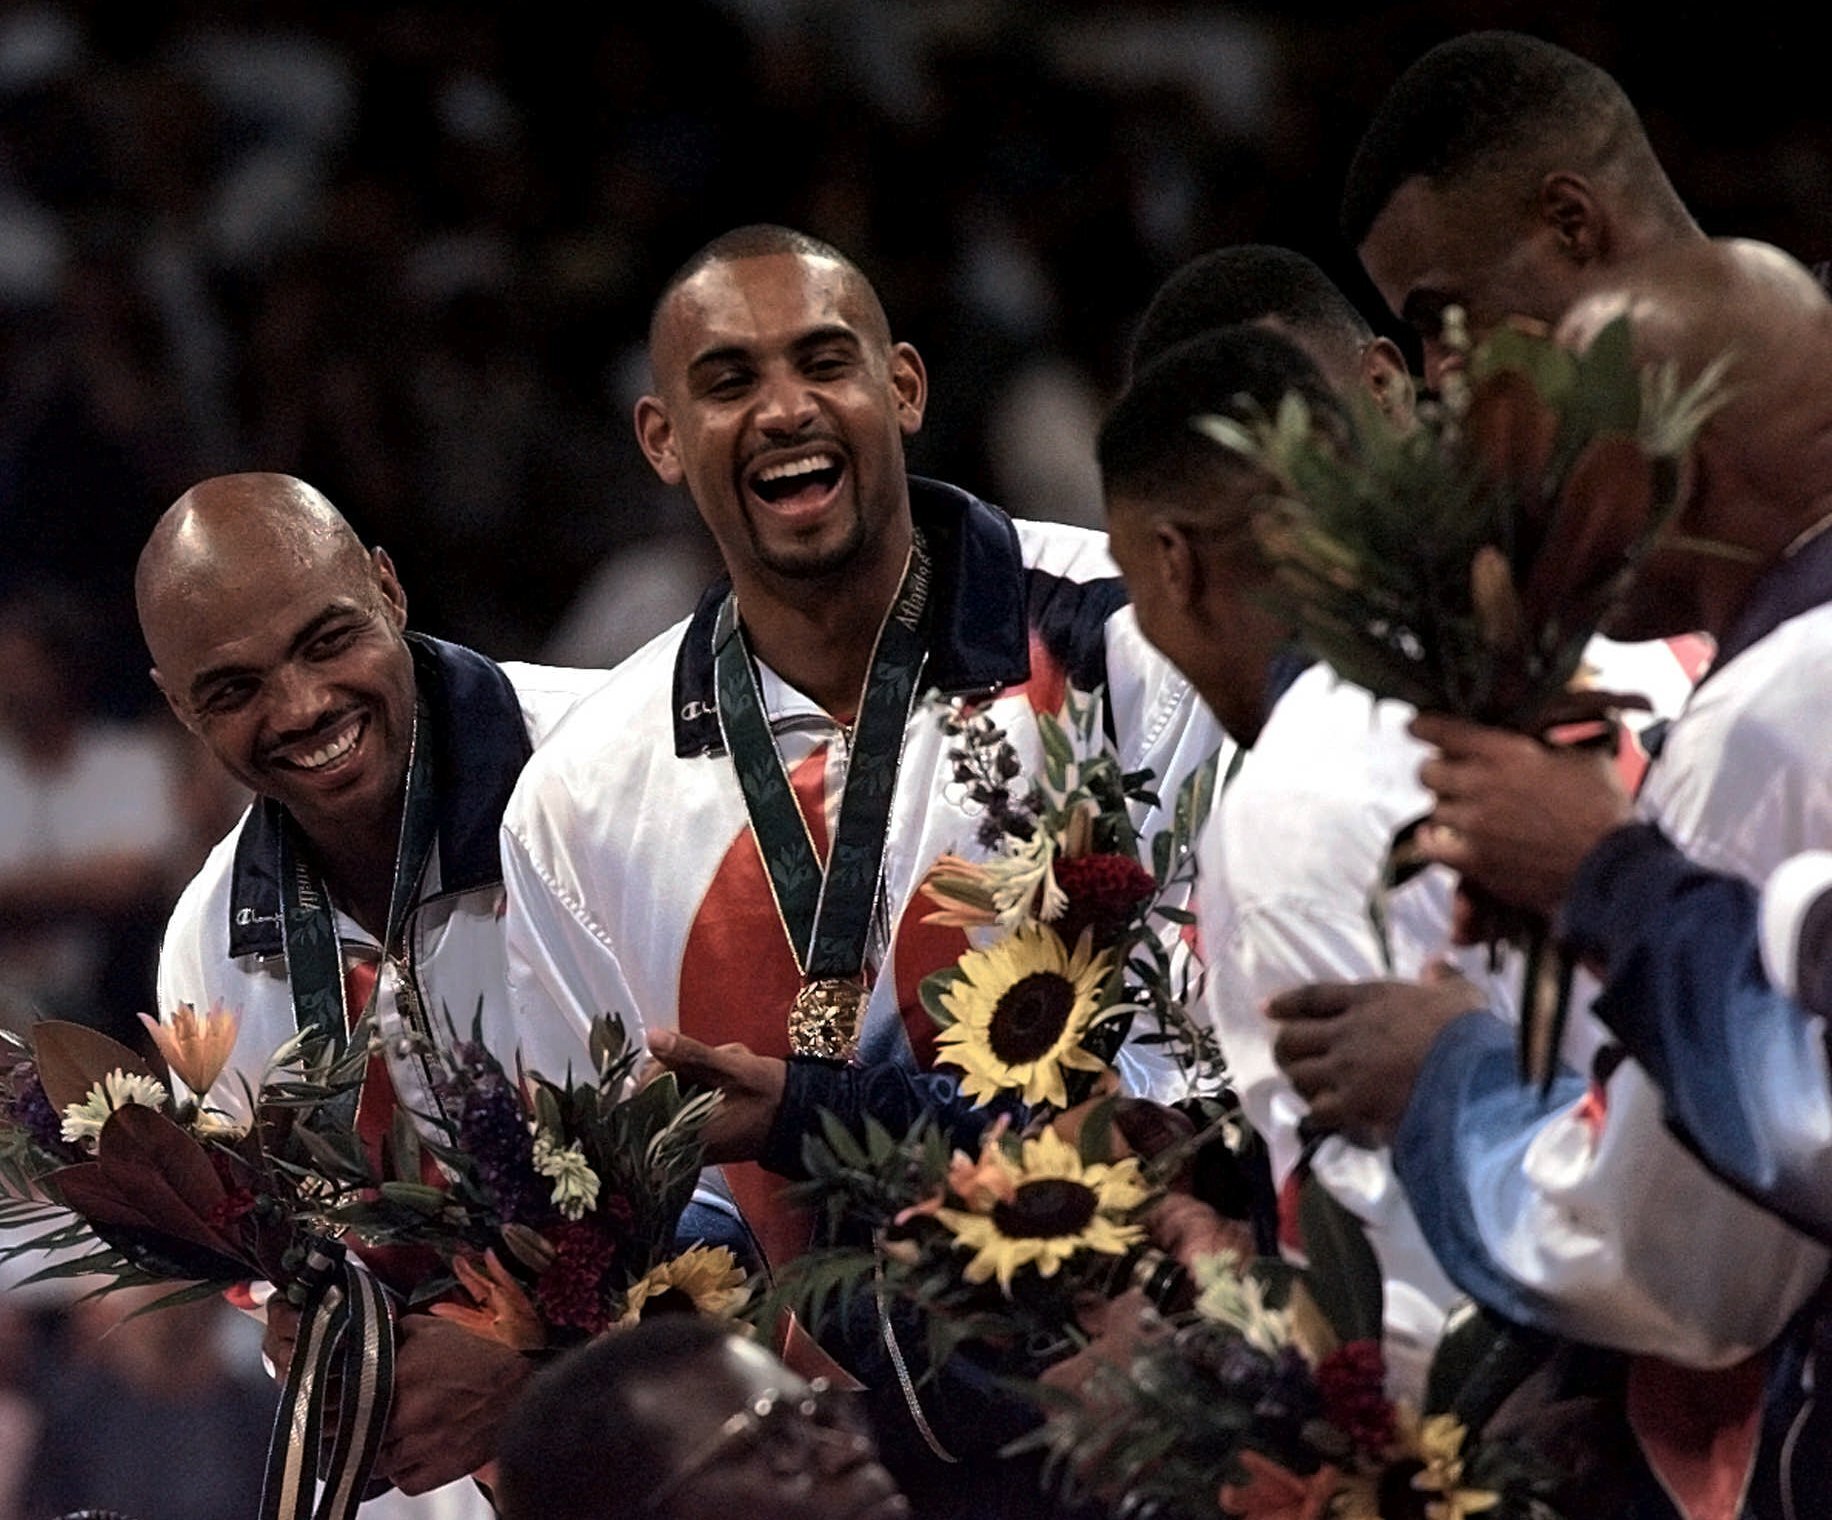 格兰特·希尔（左二）将在东京奥运后负责组建美国男篮。图为1996年8月，“梦幻队” 成员巴克利（左）、希尔与队友一起获得奥运金牌。（美联社档案照）

